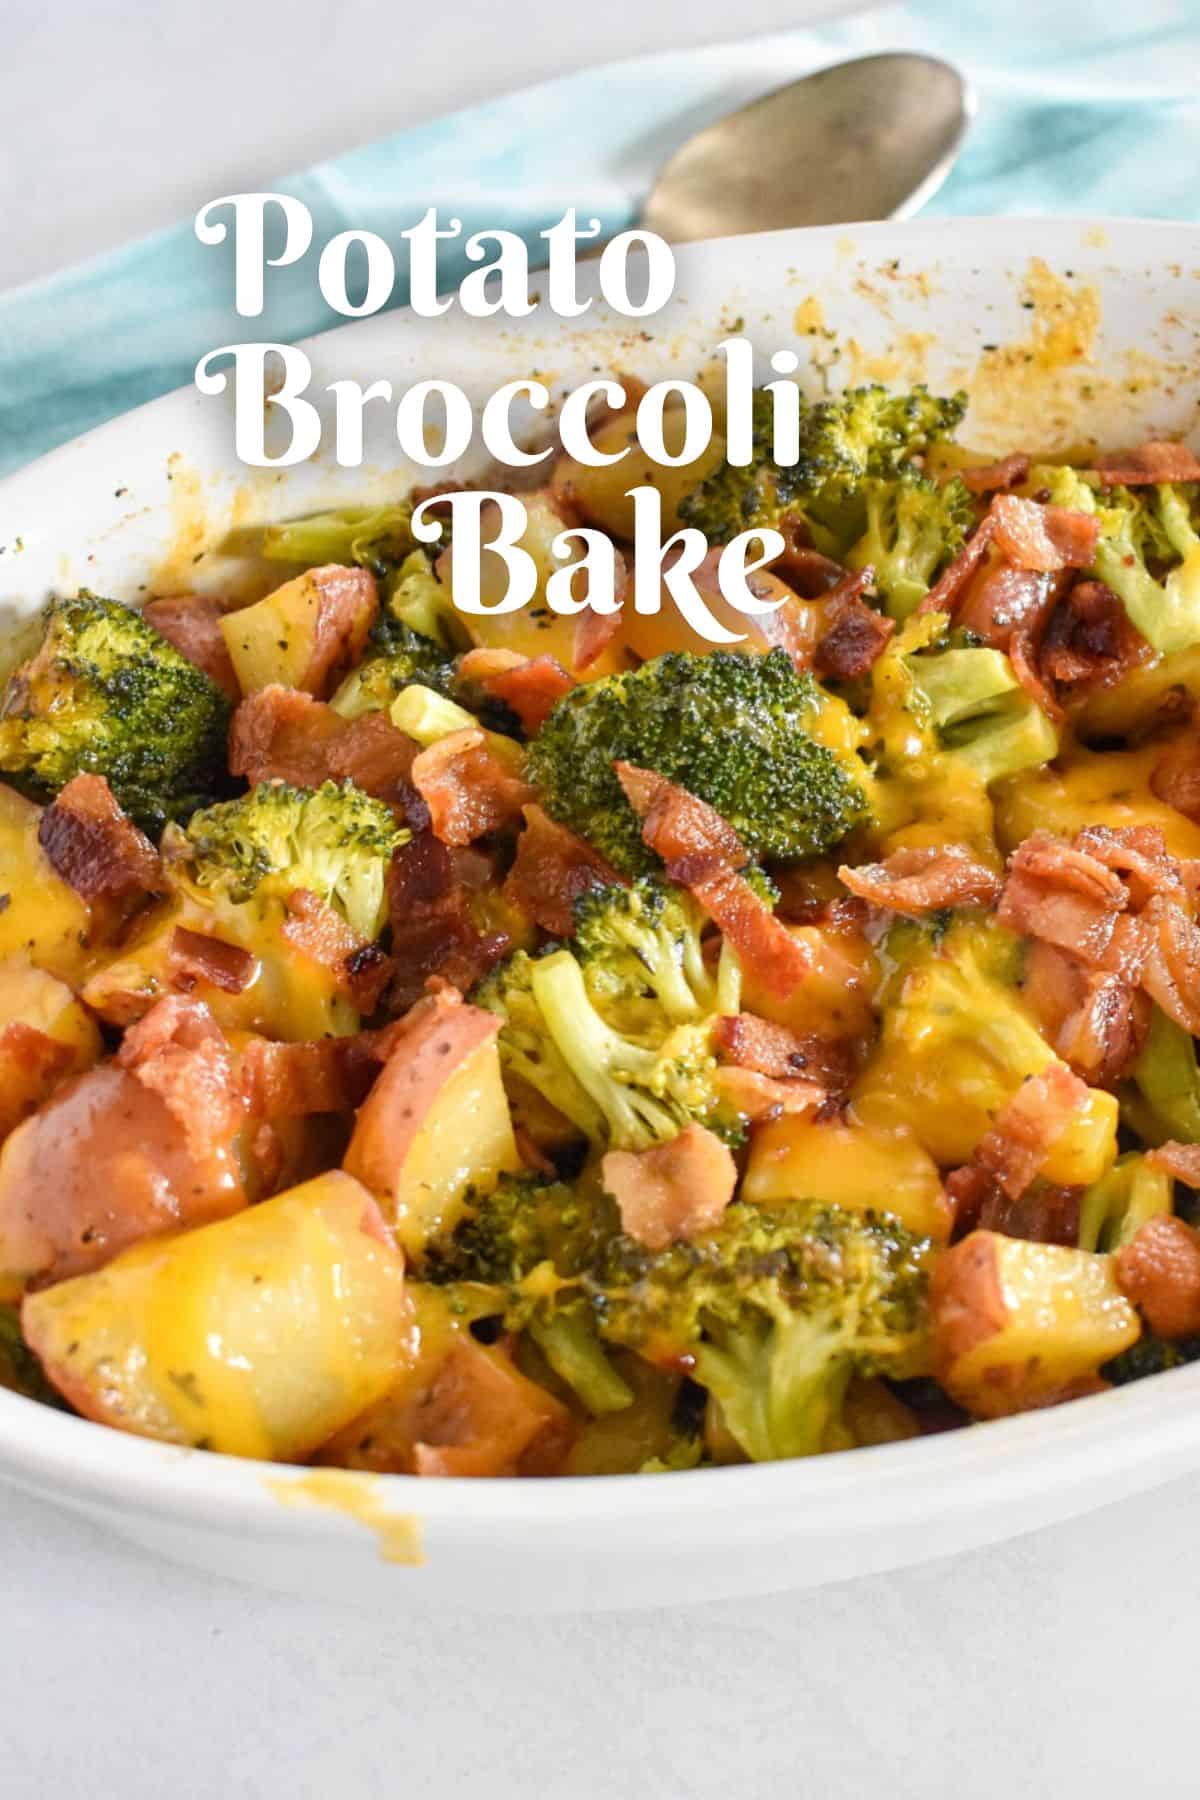 Potato Broccoli Bake - Cook2eatwell